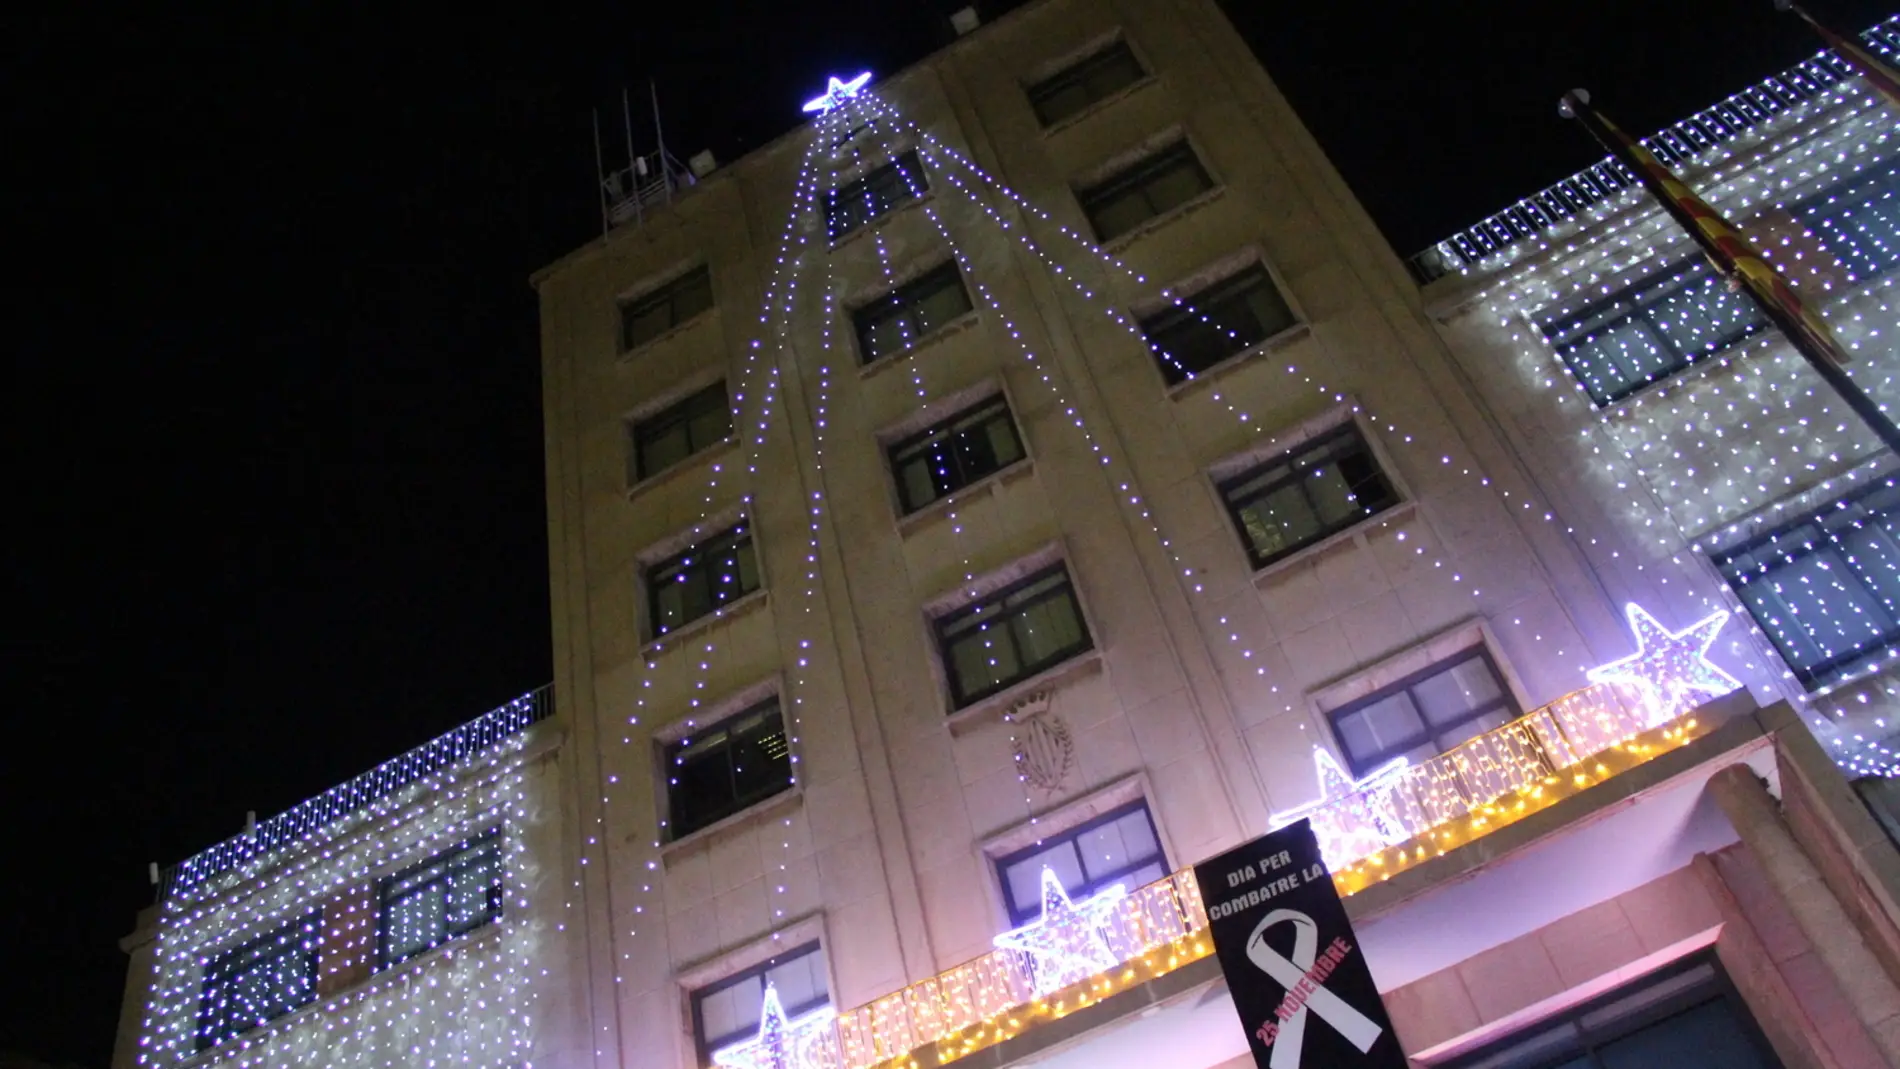 Los problemas de suministros y de tramitación retrasan la instalación de las luces de Navidad en Vila-real